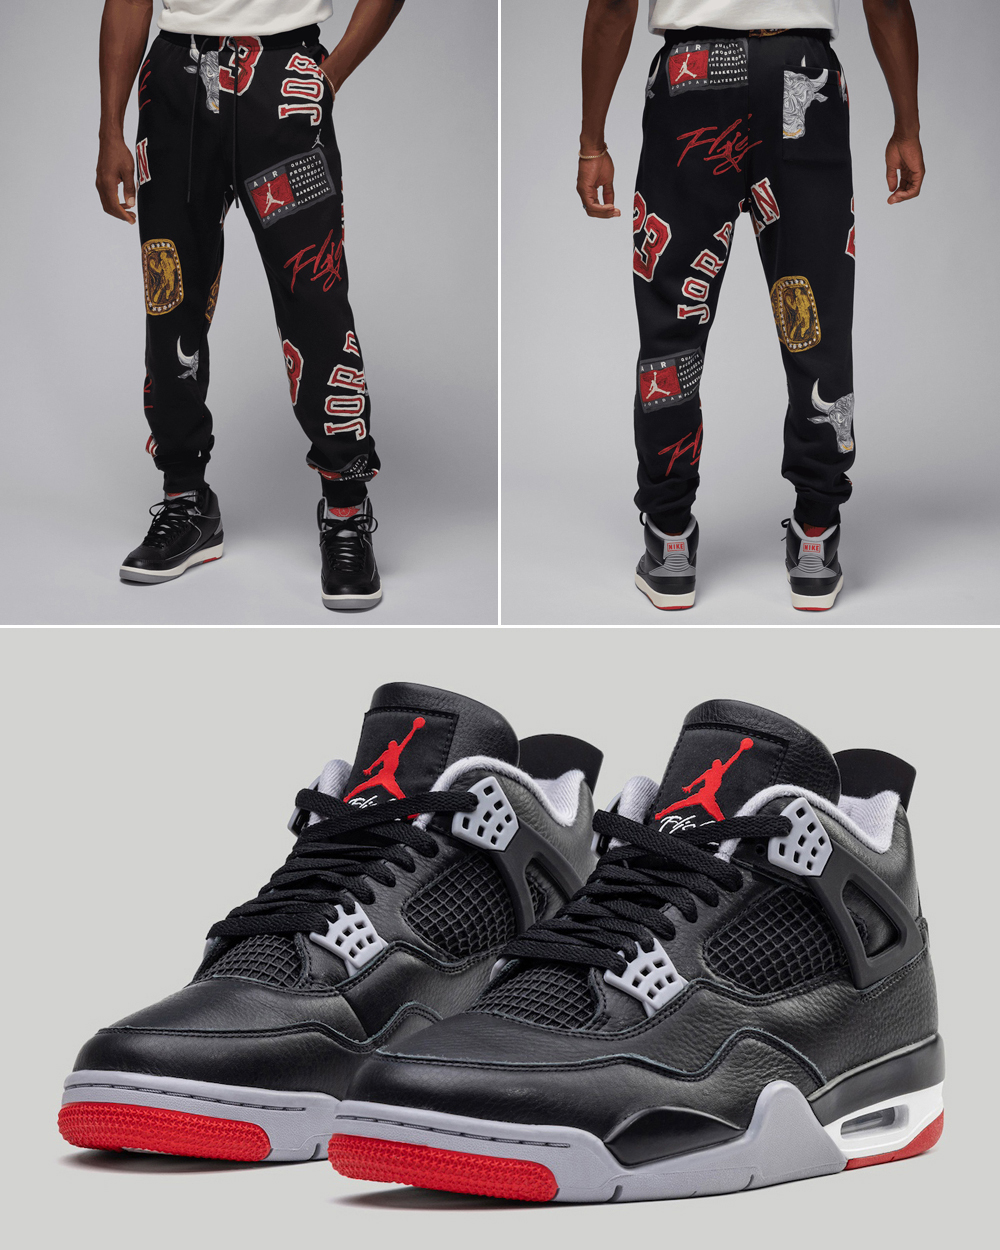 Air-Jordan-4-Bred-Reimagined-Pants-Outfit